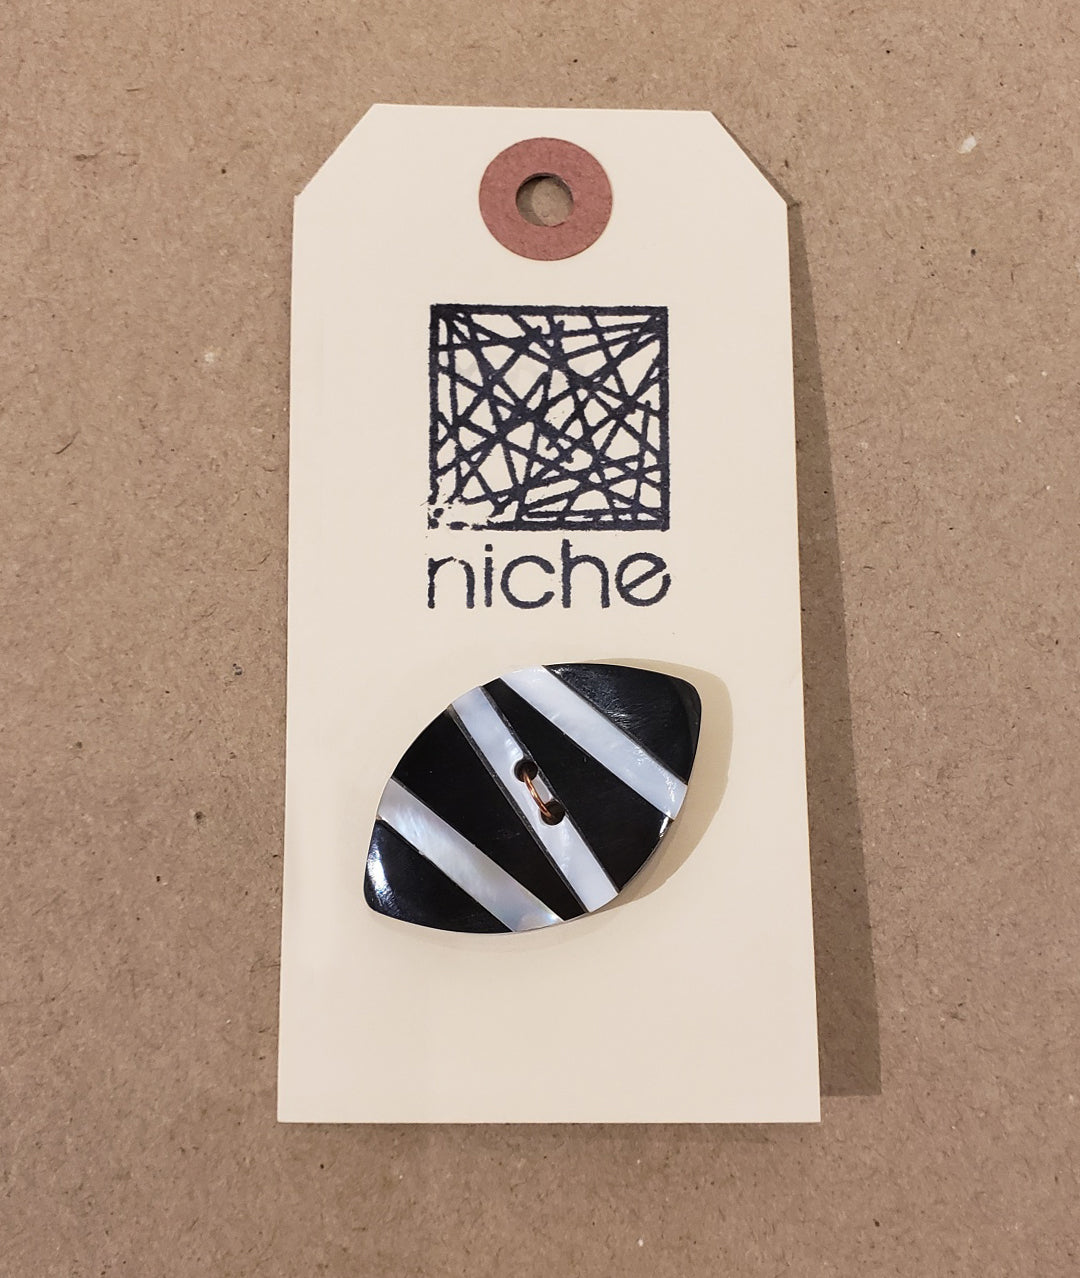 white striped button on a Niche card